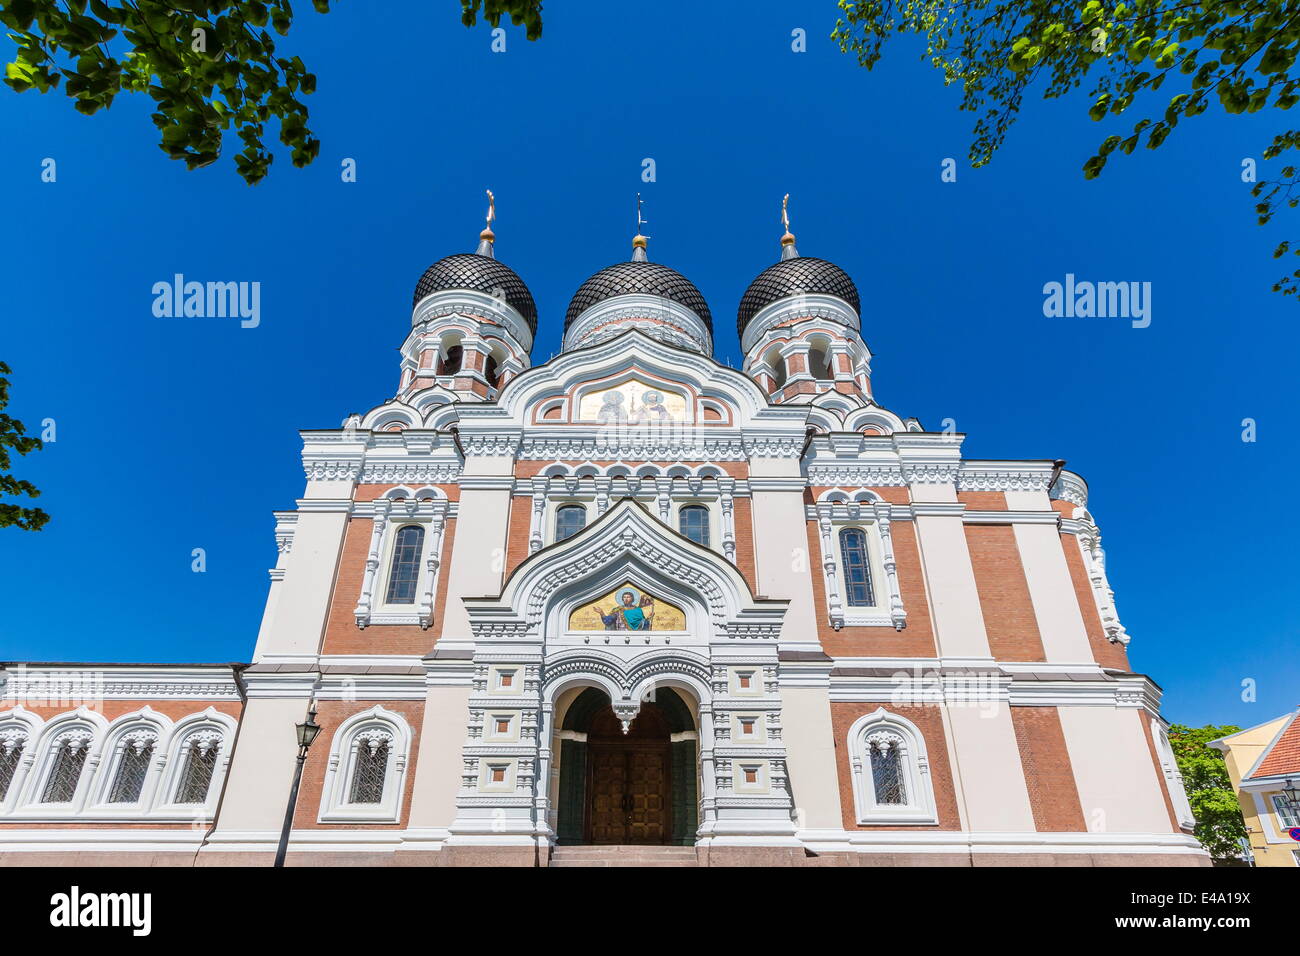 Vista esterna di una chiesa ortodossa nella città capitale di Tallinn, Estonia, Europa Foto Stock